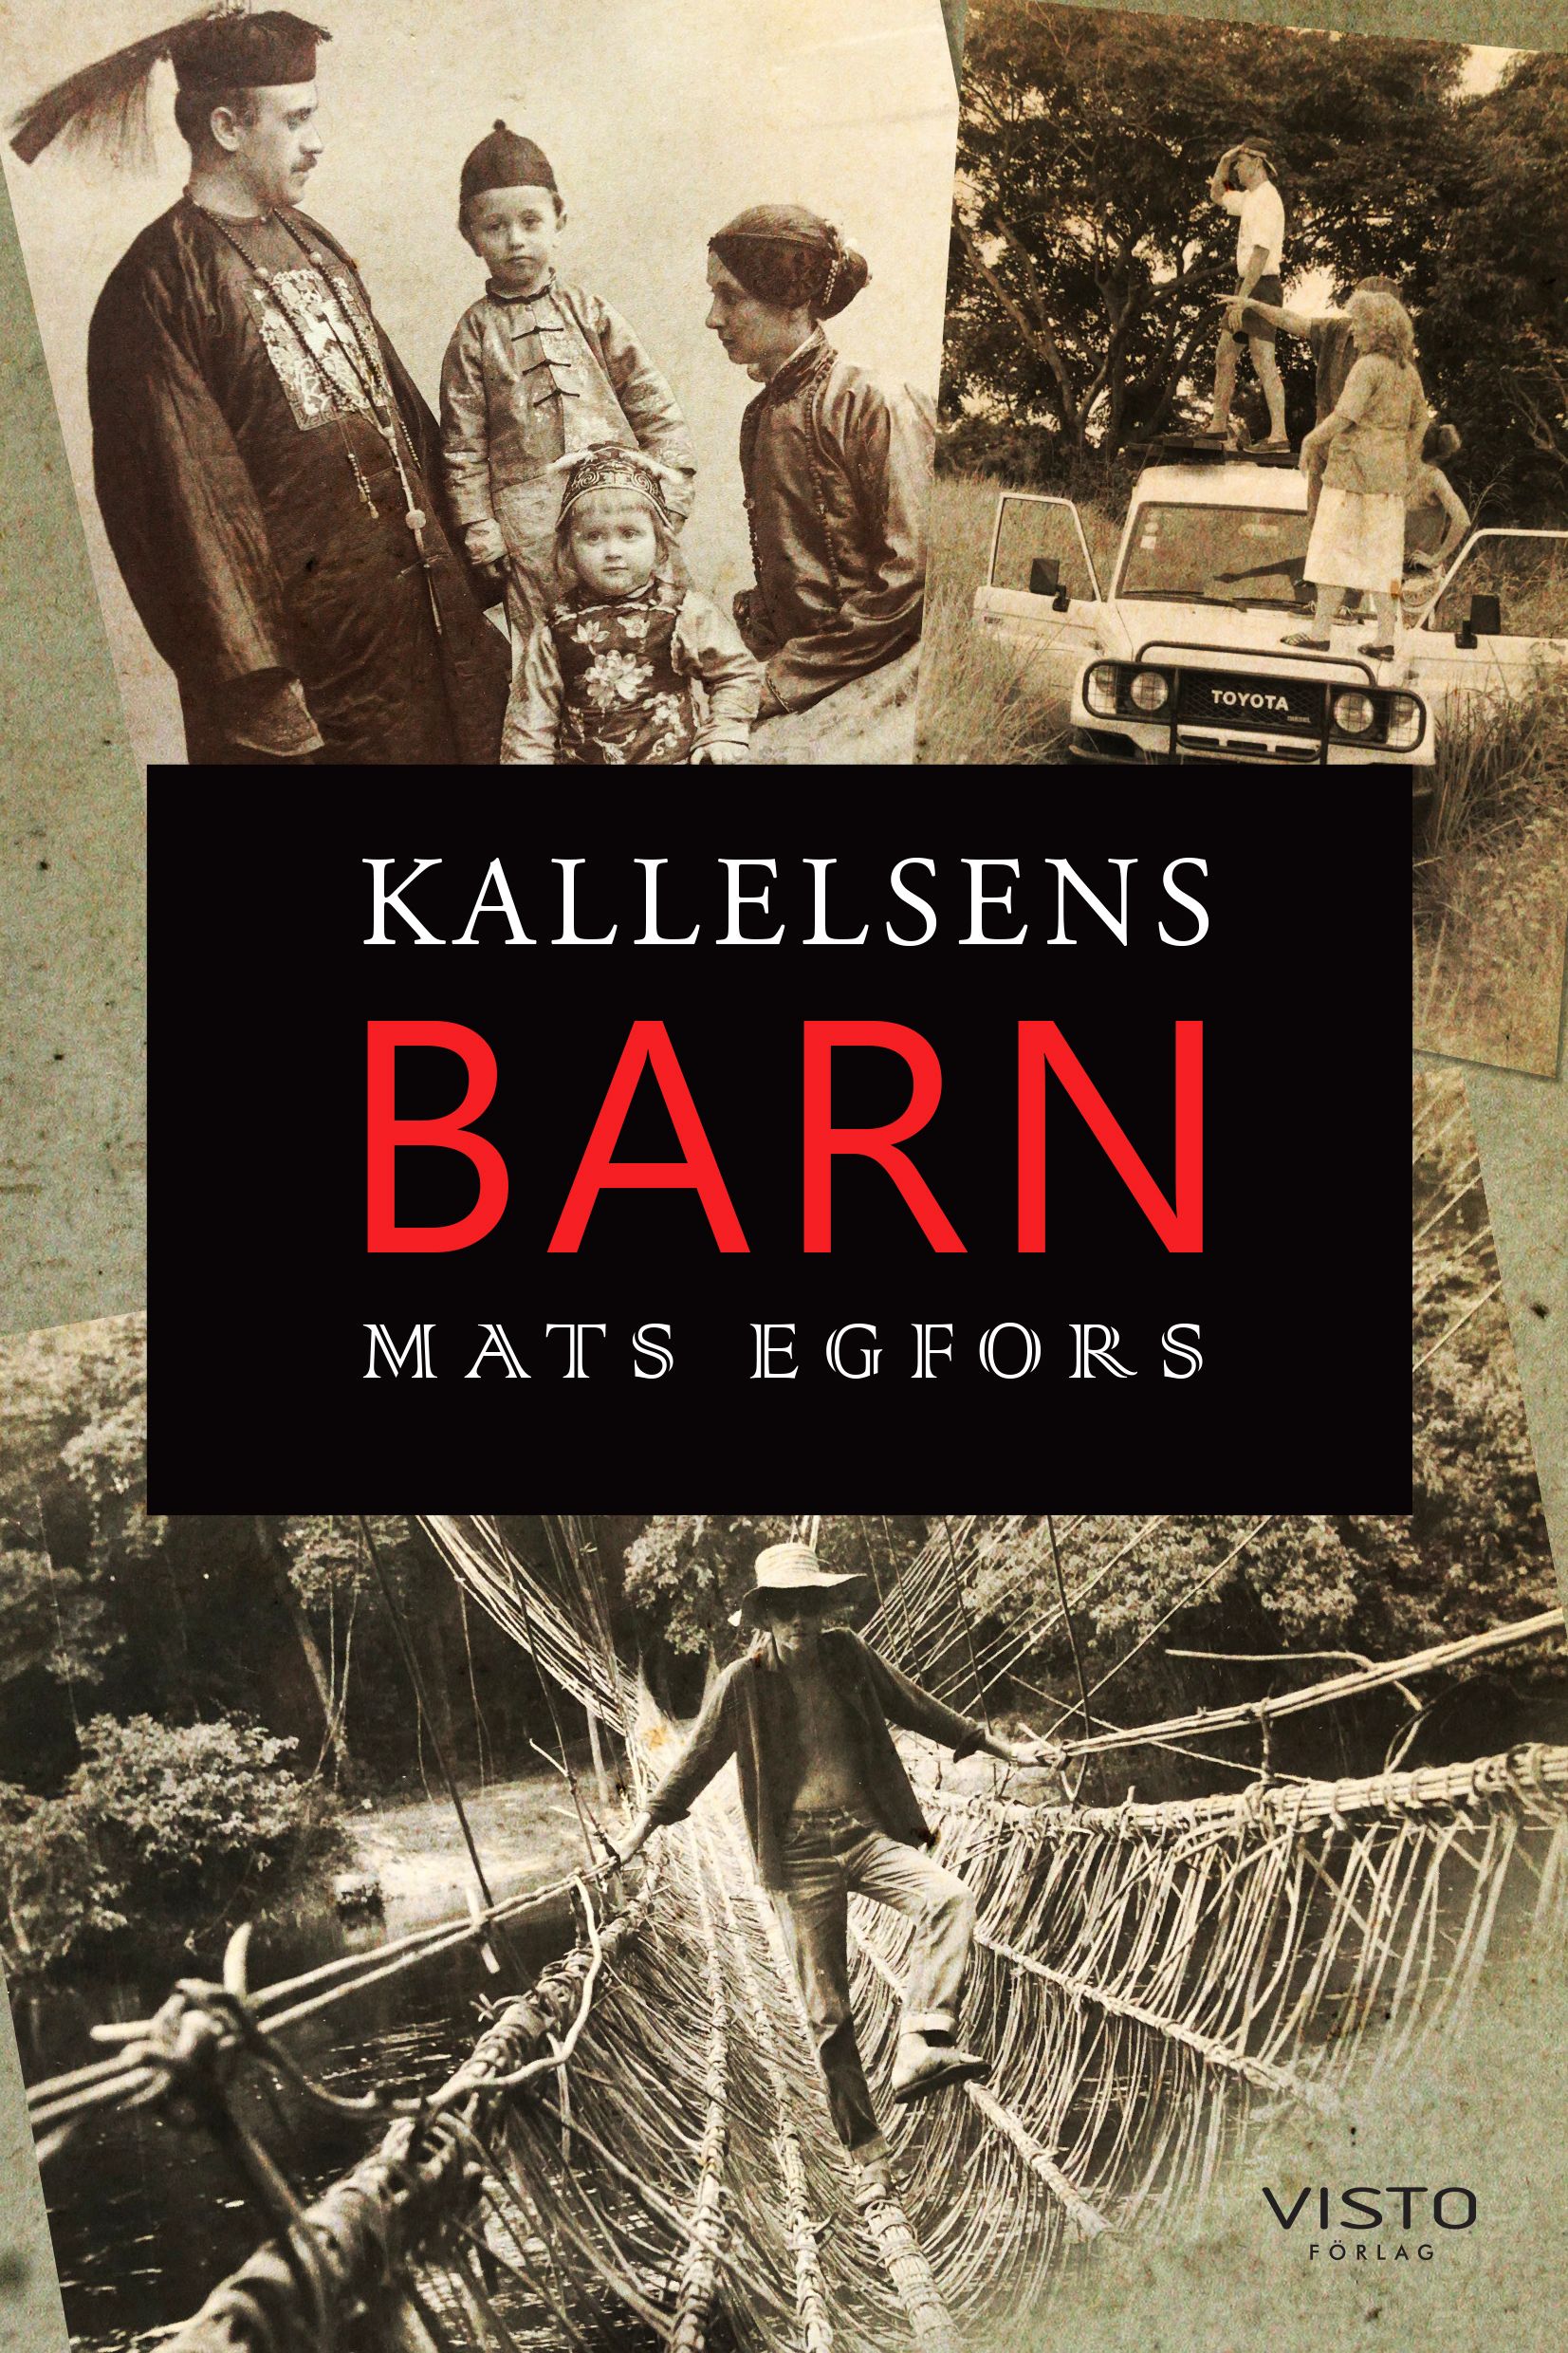 Kallelsens barn, eBook by Mats Egfors